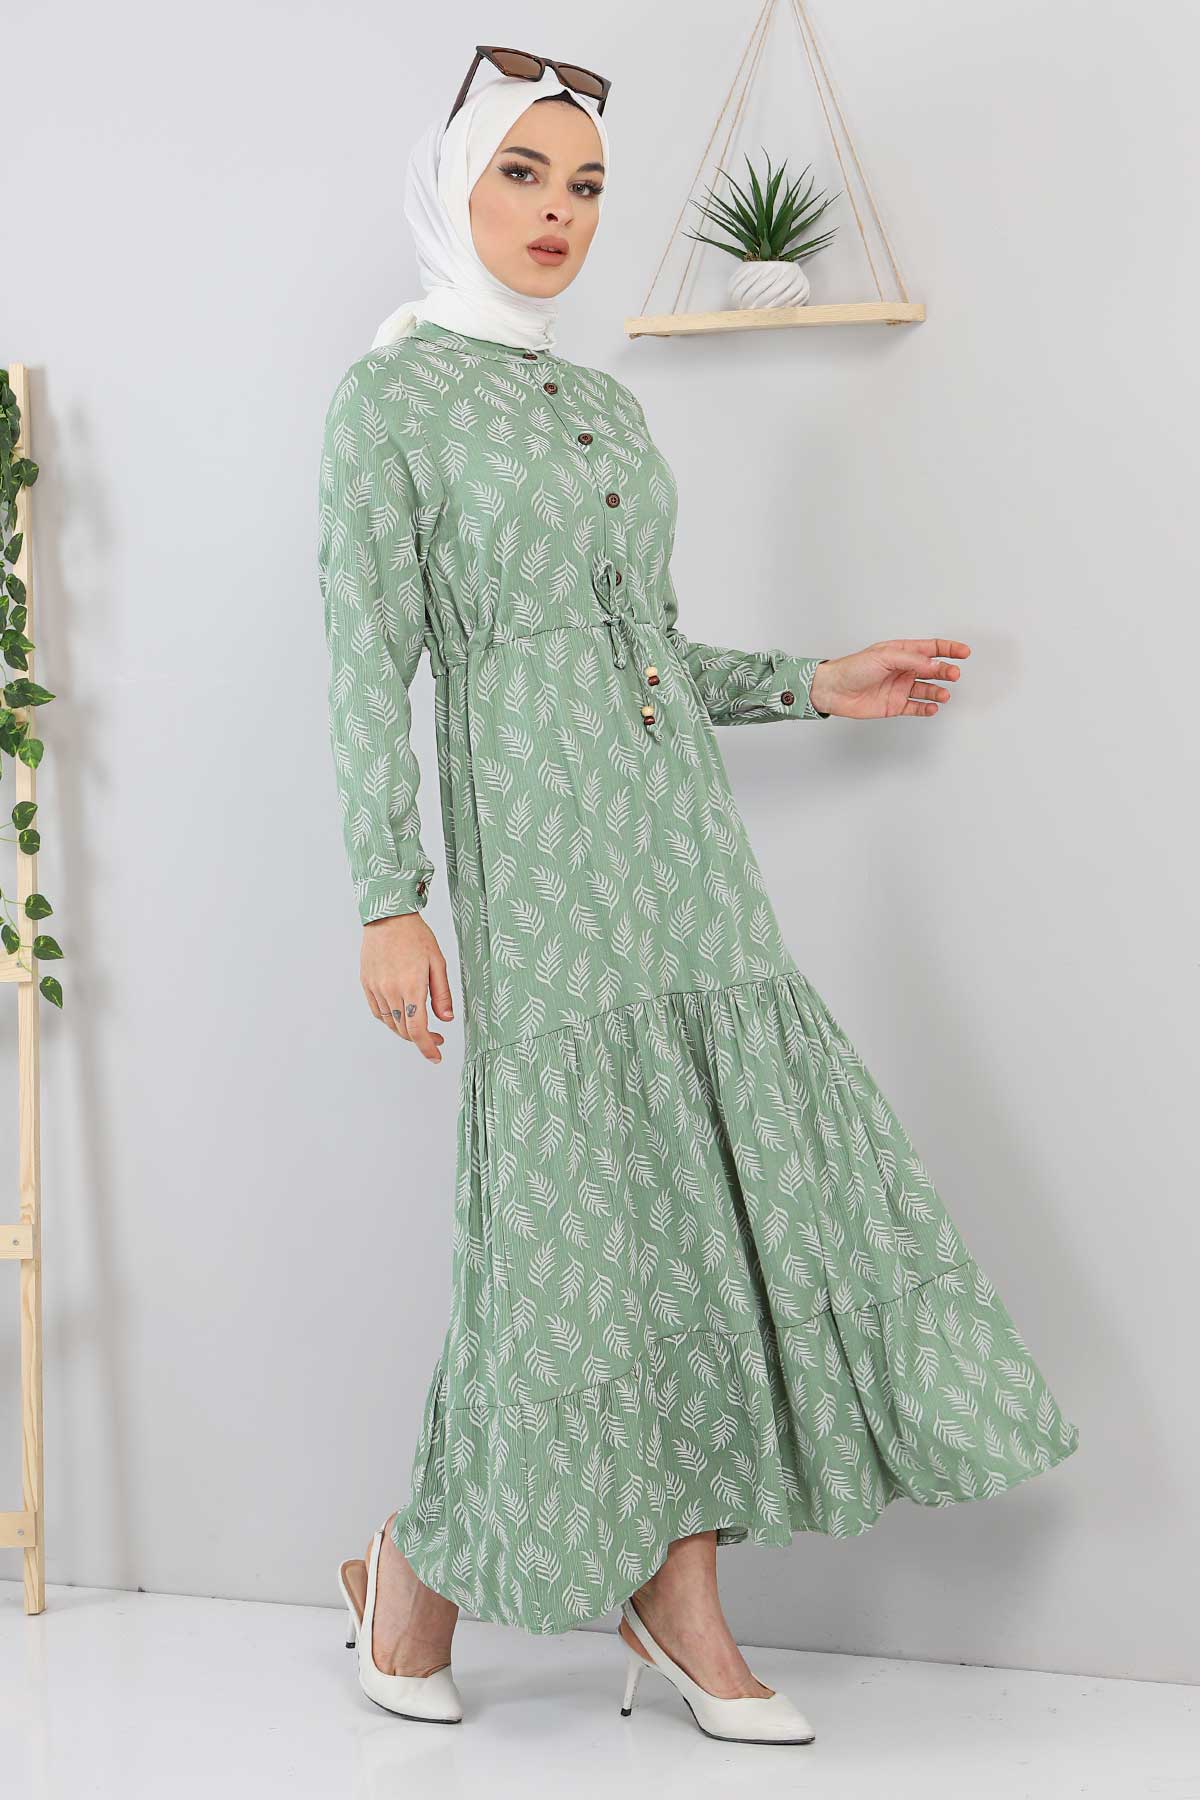 Tesettür Dünyası - Yaprak Desenli Tesettür Elbise TSD211236 Mint Yeşili